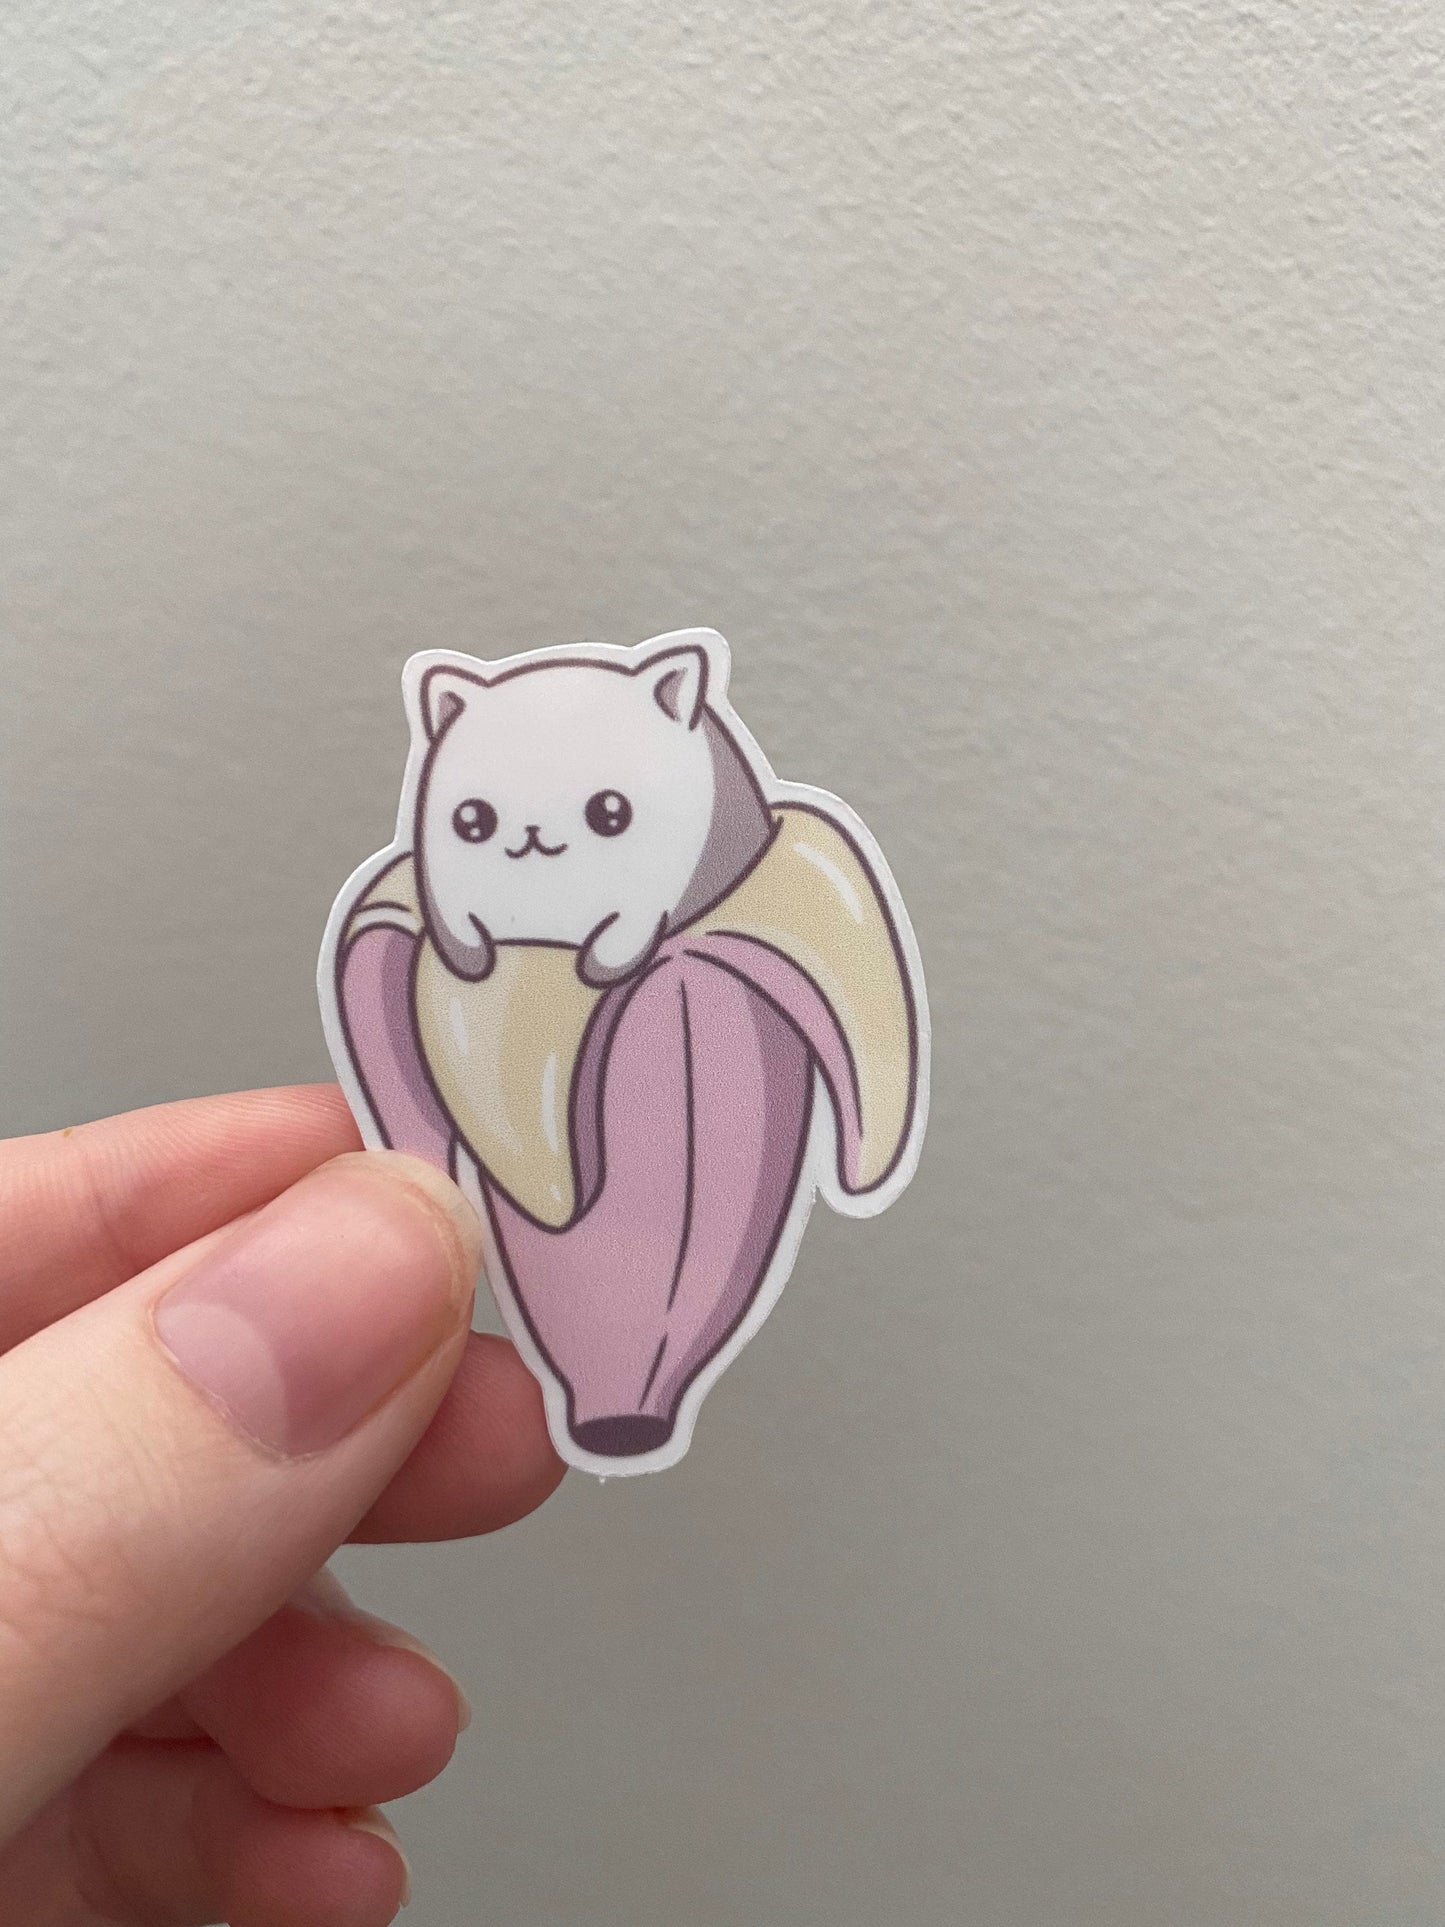 Kawaii Banana Cat Sticker, Cute Cat Sticker, Banana Sticker, Cute Banana Sticker, Kawaii Stickers, Cute Stickers, Cat in Banana Sticker